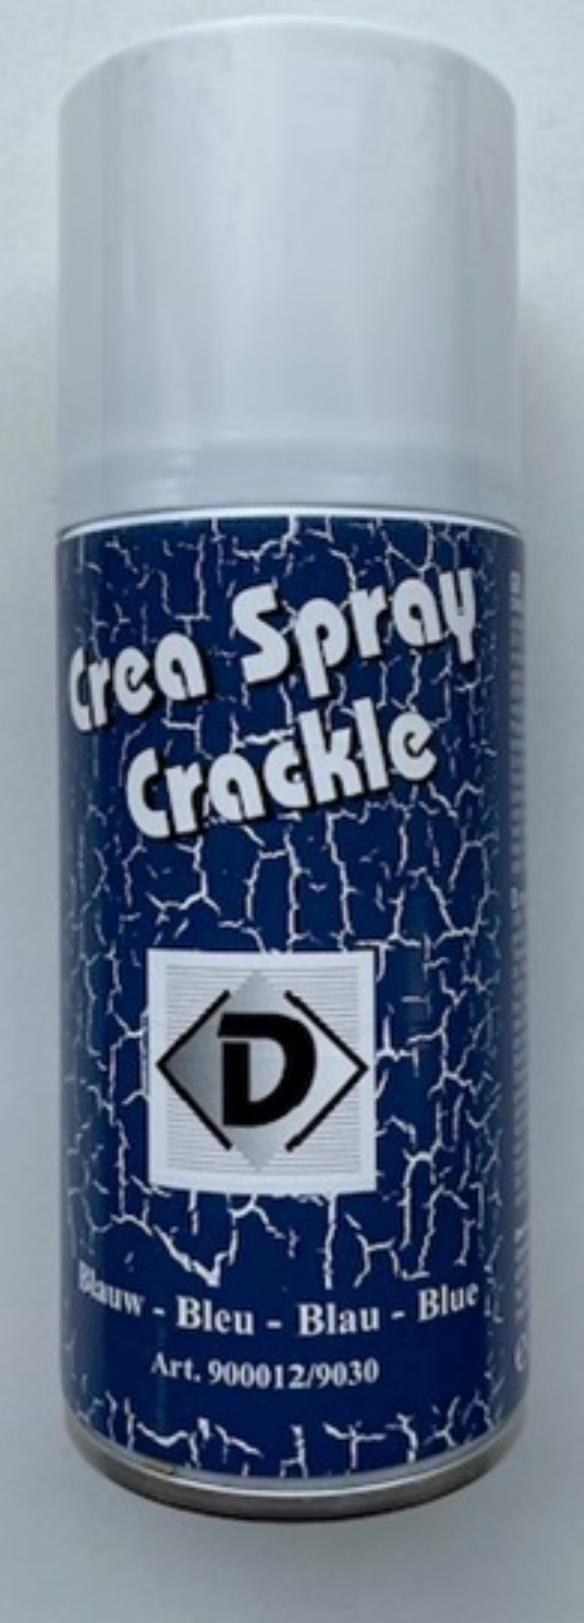 OUTLET Crea spray crackle, 150 ml, blauw kopen?